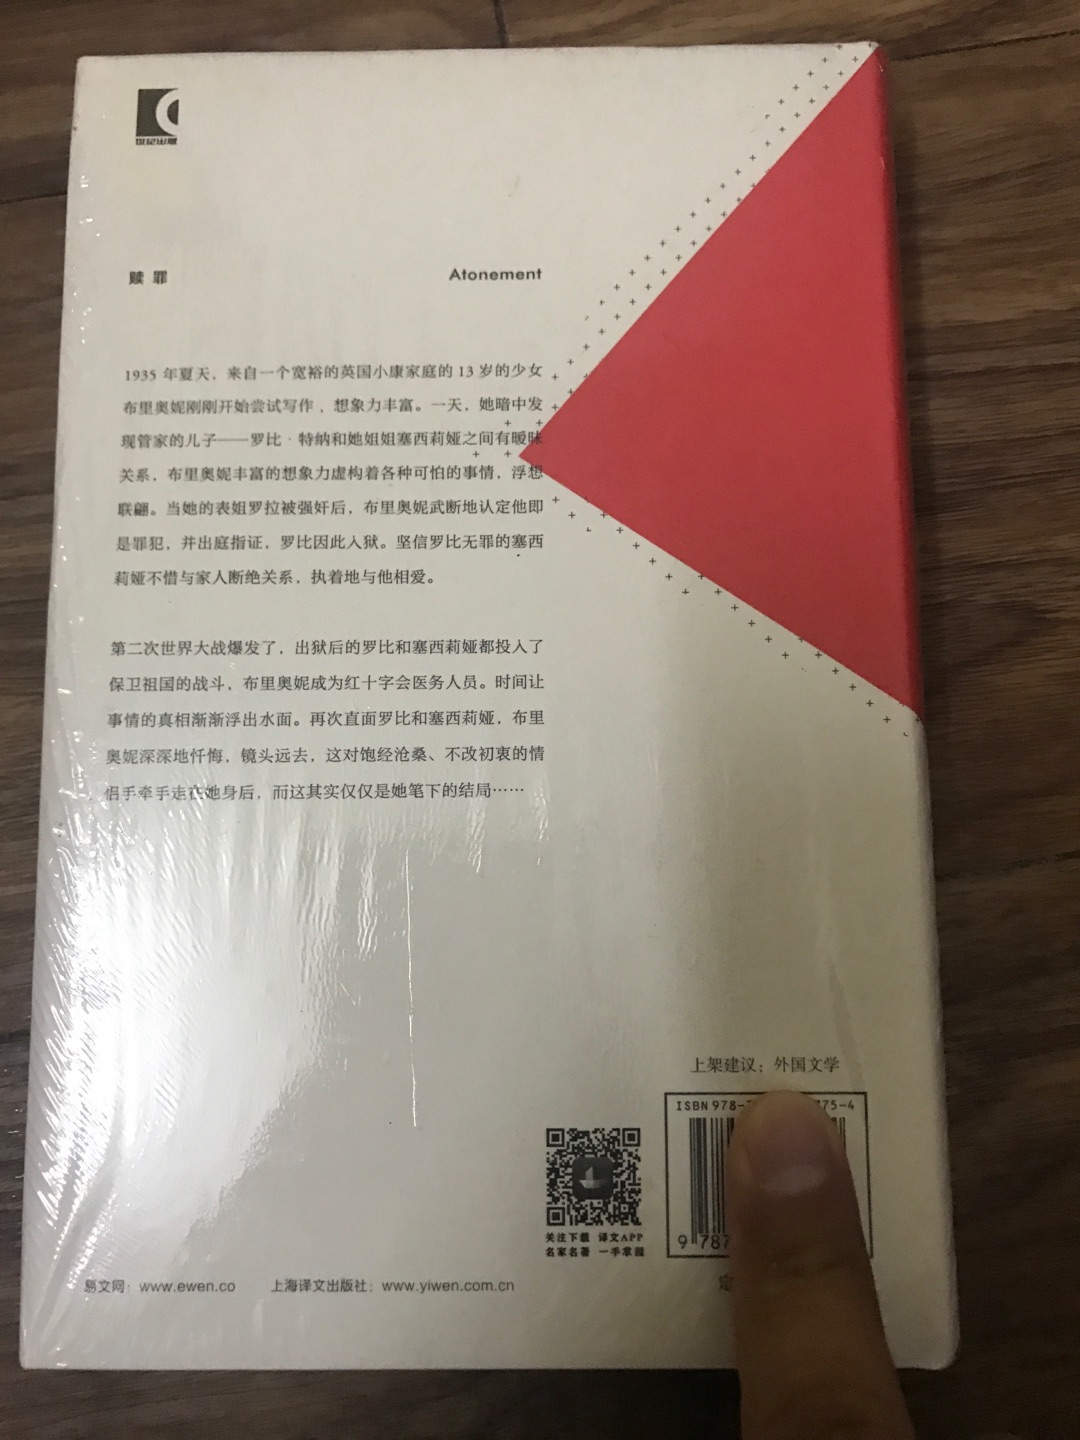 上海译文出版社出版的麦克尤恩作品集之《赎罪》，麦克尤恩在英国文坛堪称奇迹。这套书均是32开本的硬壳精装，方便携带阅读，印刷精美，字迹清楚，行间距便于阅读，值得推荐。